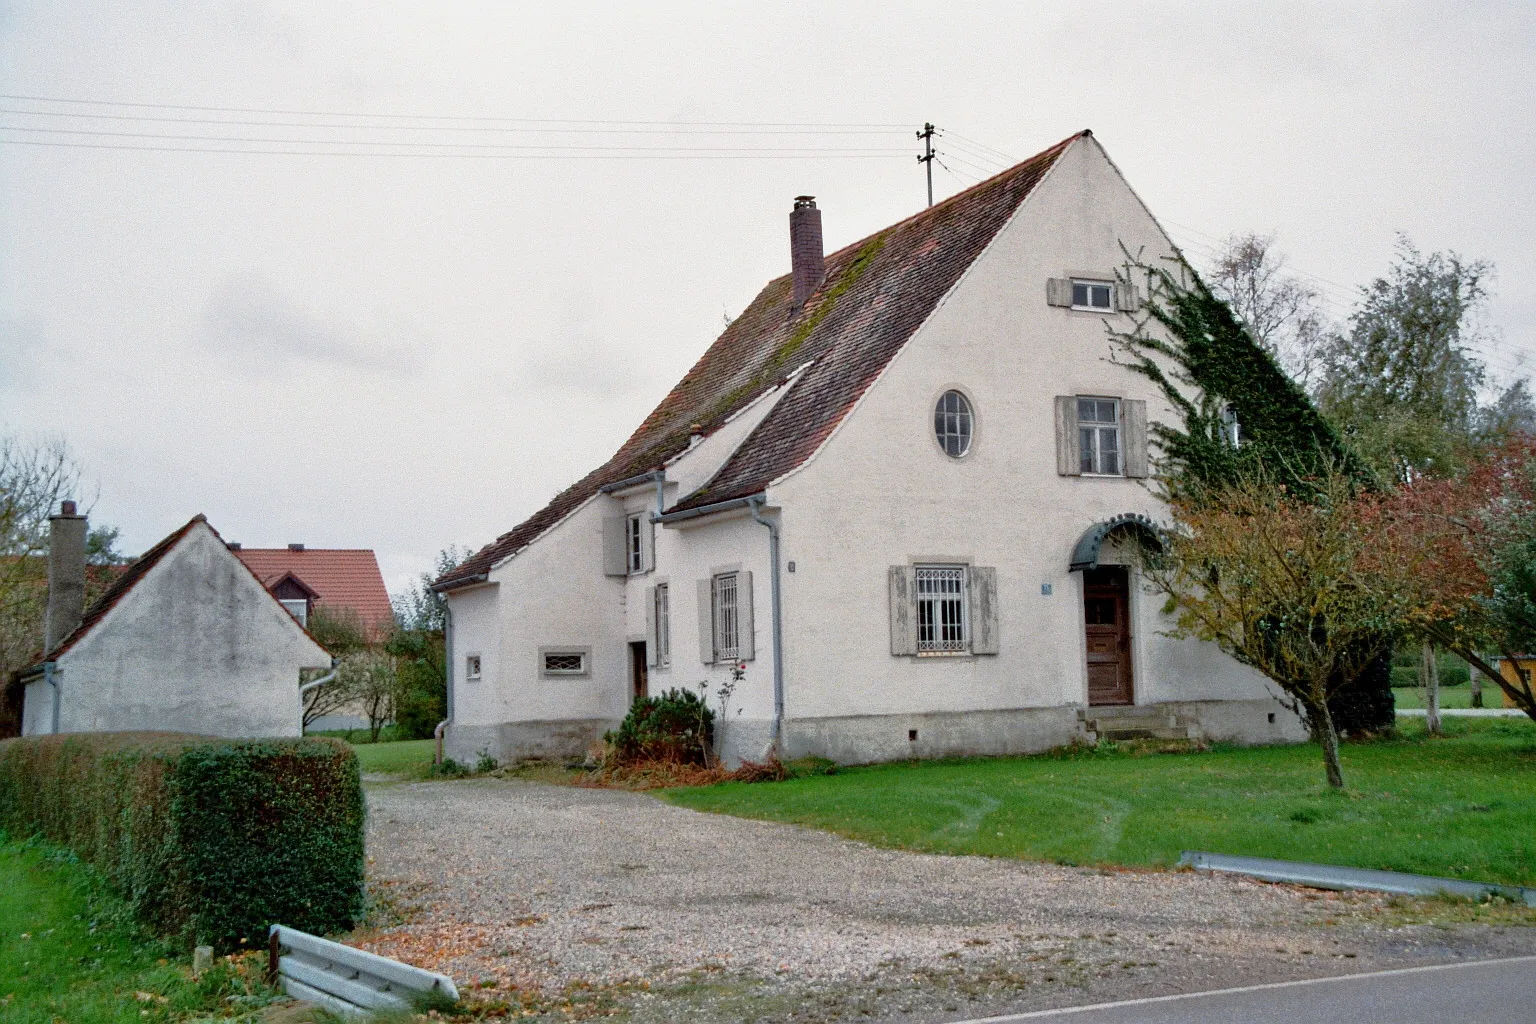 Photo showing: Leerstehendes Haus in Klingsmoos, Ortsteil von Königsmoos, Landkreis Neuburg-Schrobenhausen, Bayern, Deutschland.